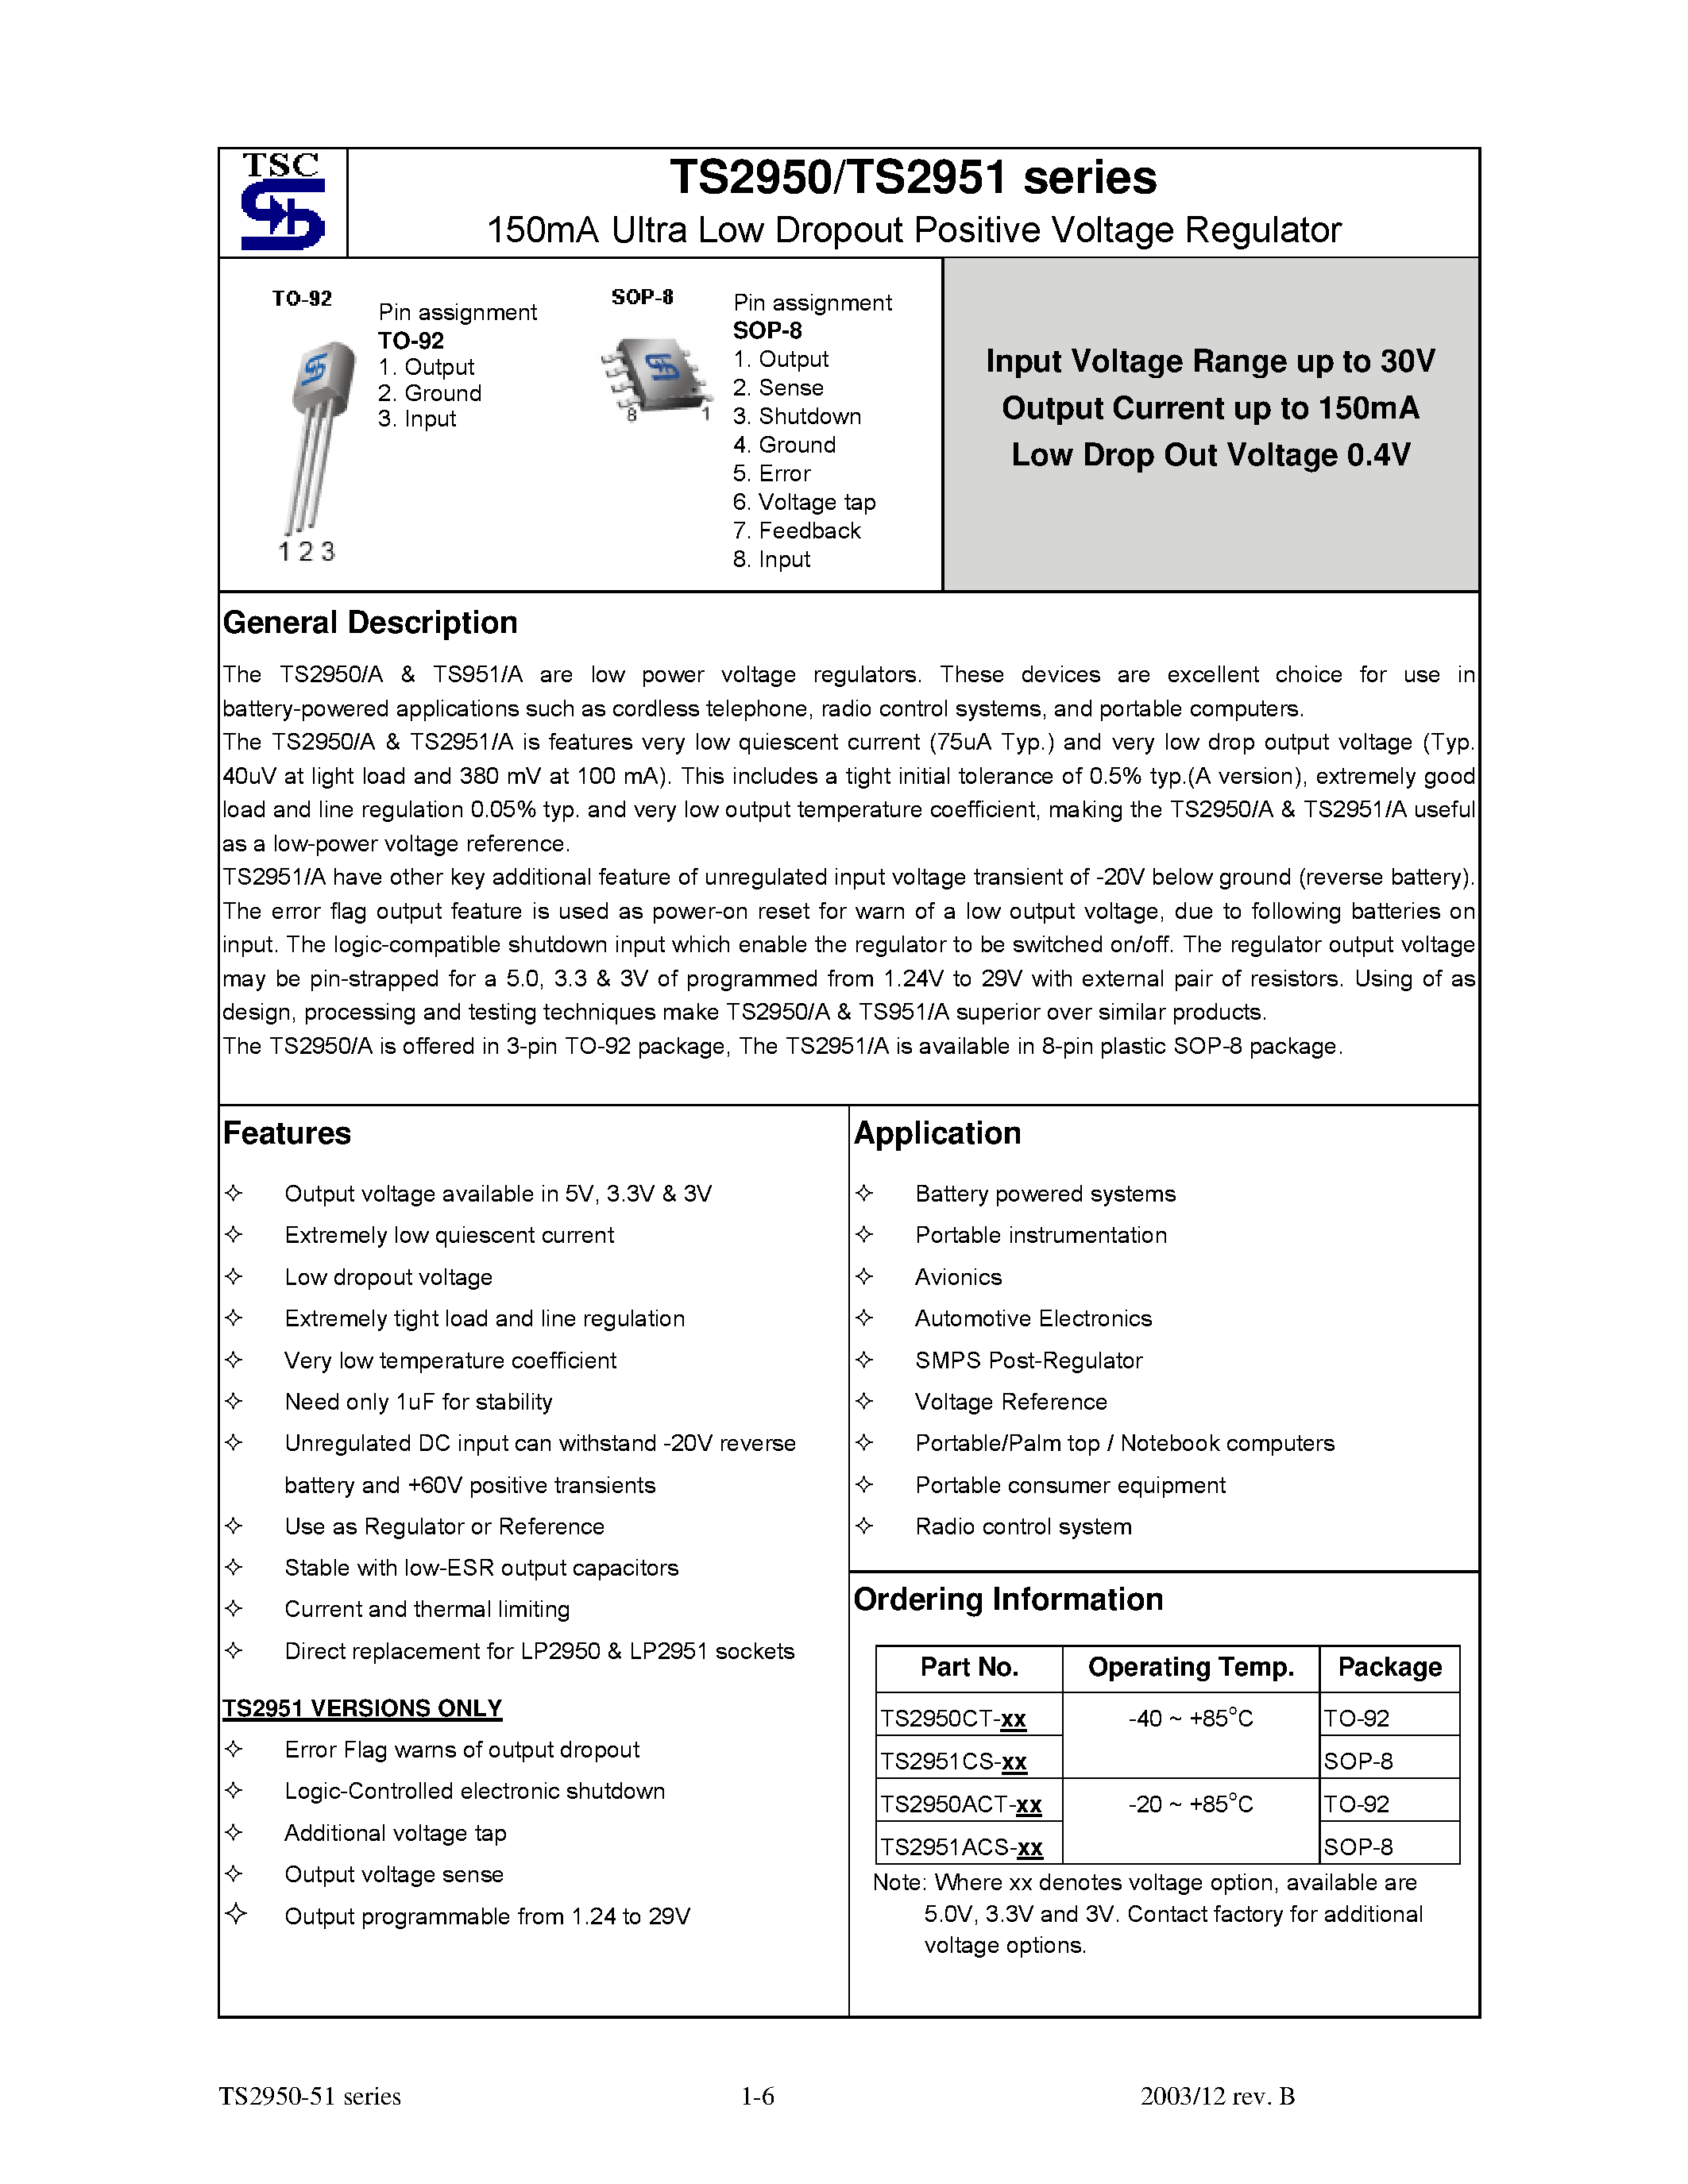 Даташит TS2950 - (TS2950 / TS2951) 150mA Ultra Low Dropout Positive Voltage Regulator страница 1